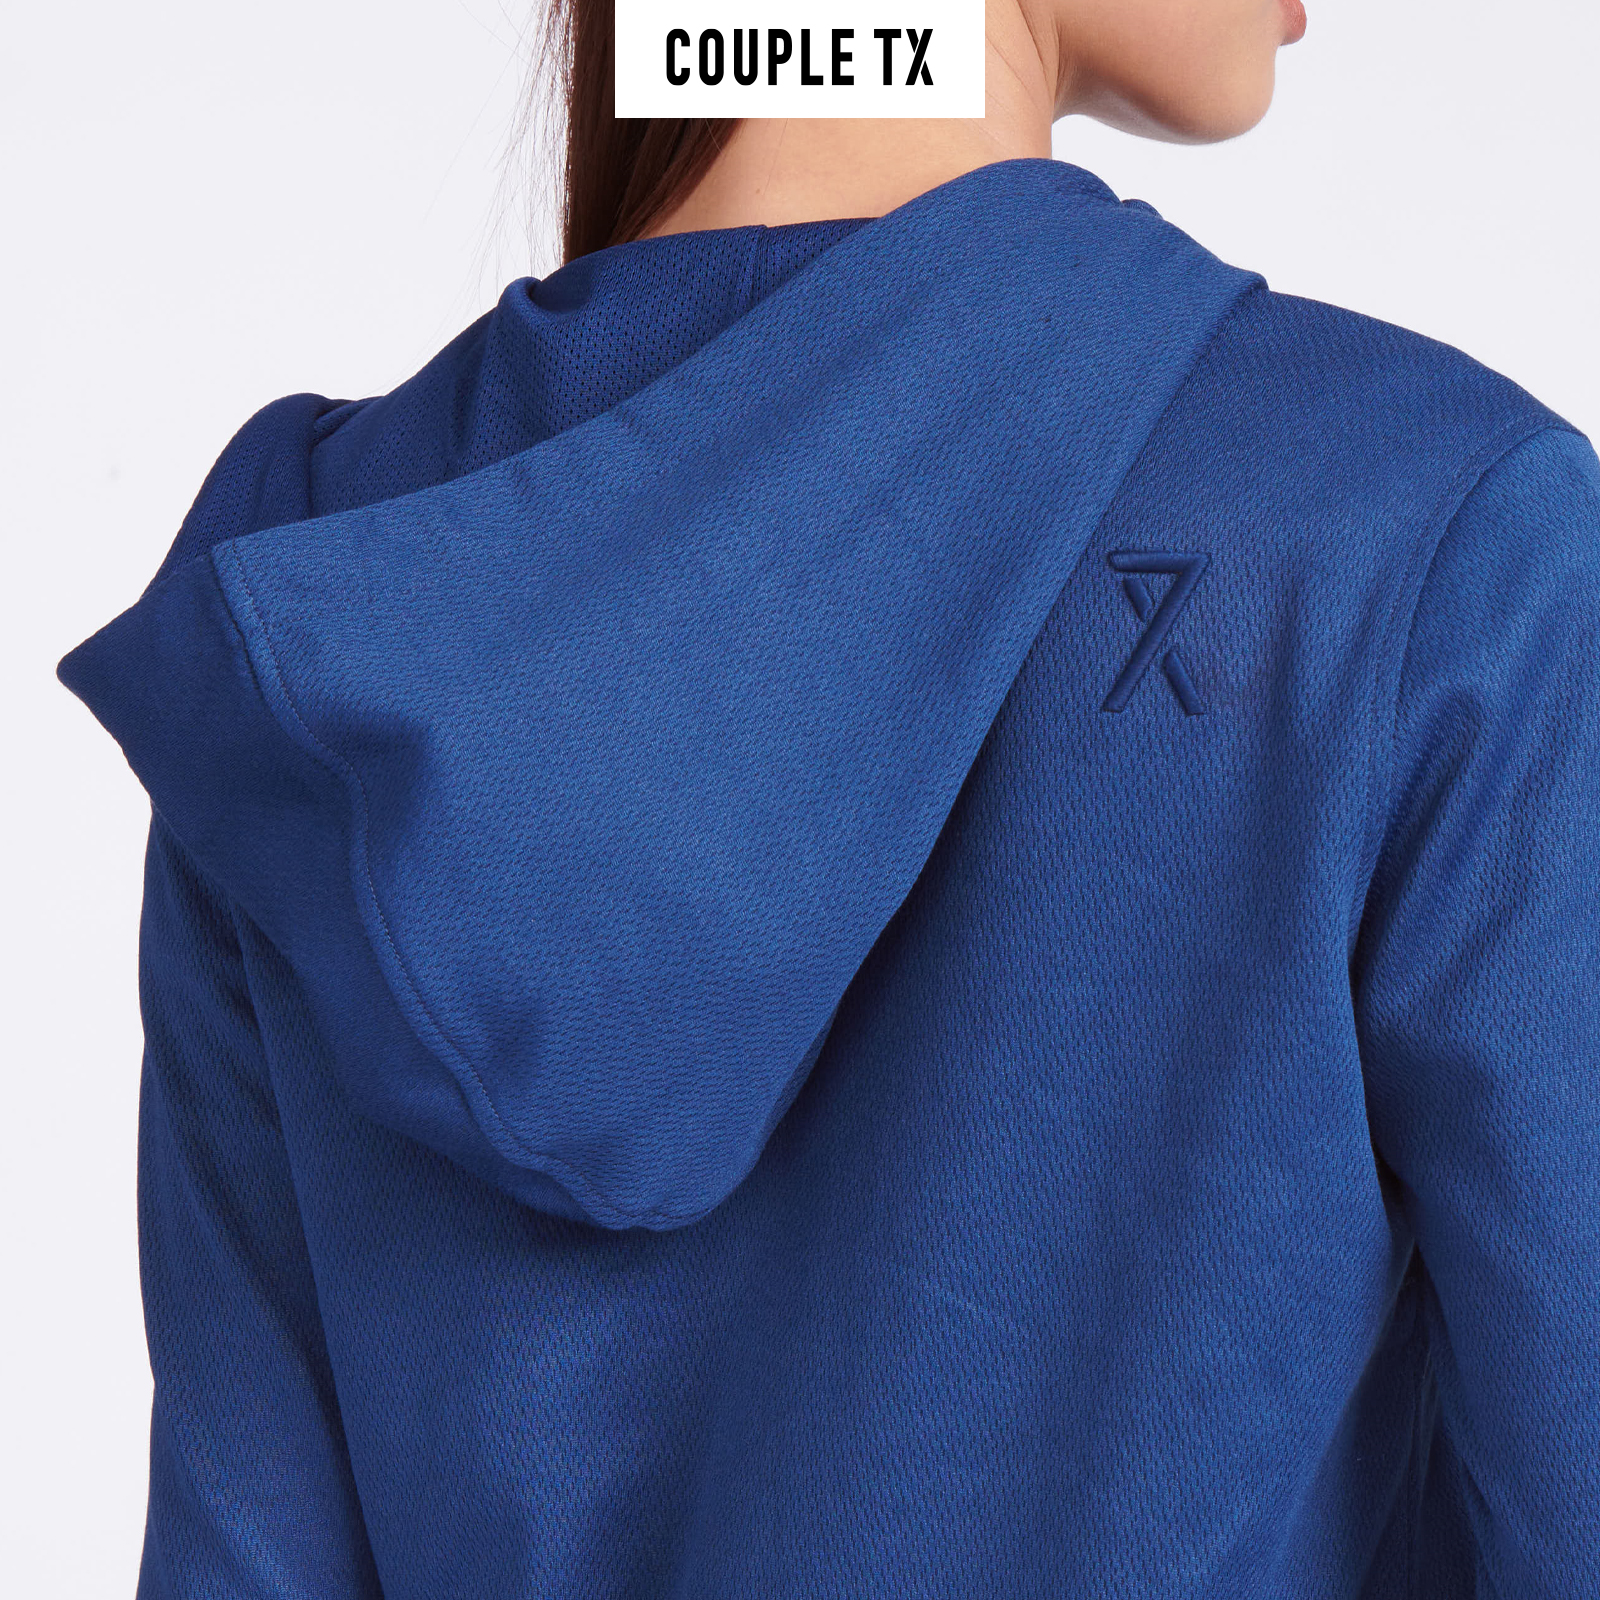 Áo Khoác UV Nữ Vải Tricot Chống Nắng Couple TX